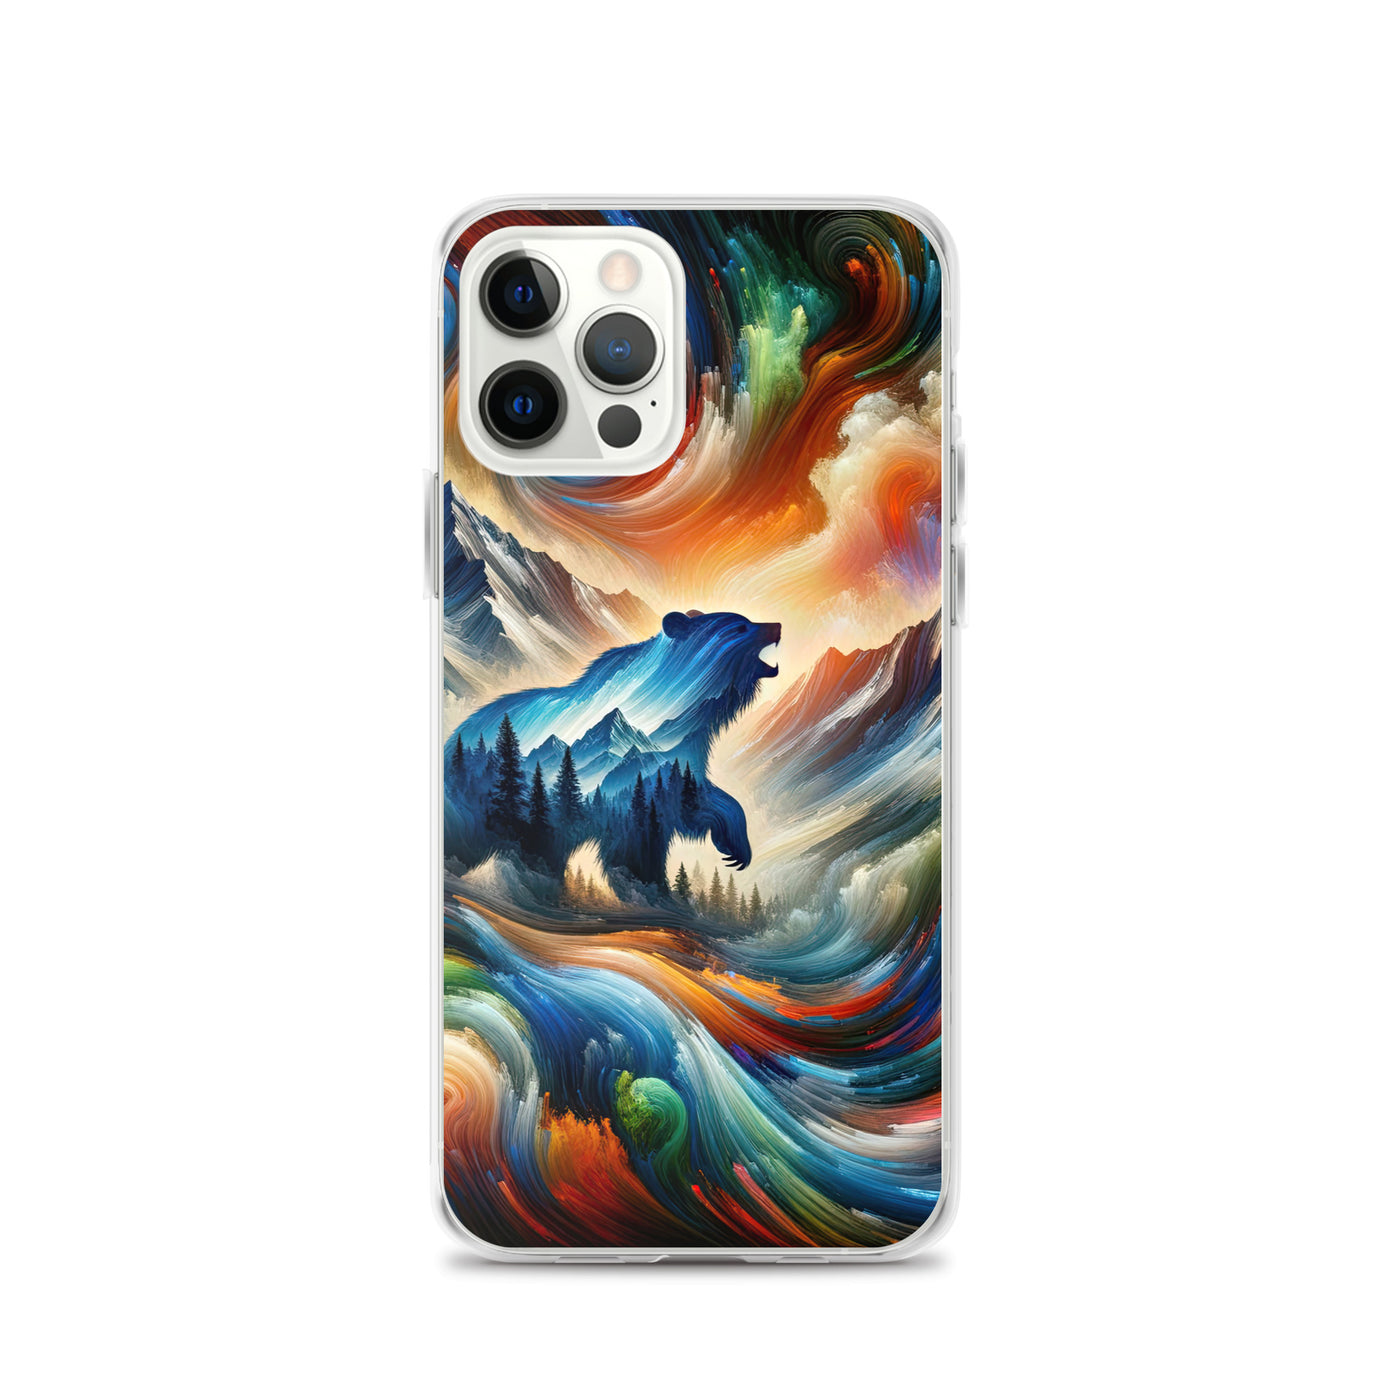 Lebendige Alpen und Bären Sillhouette über Berggipfel - Abstraktes Gemälde - iPhone Schutzhülle (durchsichtig) camping xxx yyy zzz iPhone 12 Pro